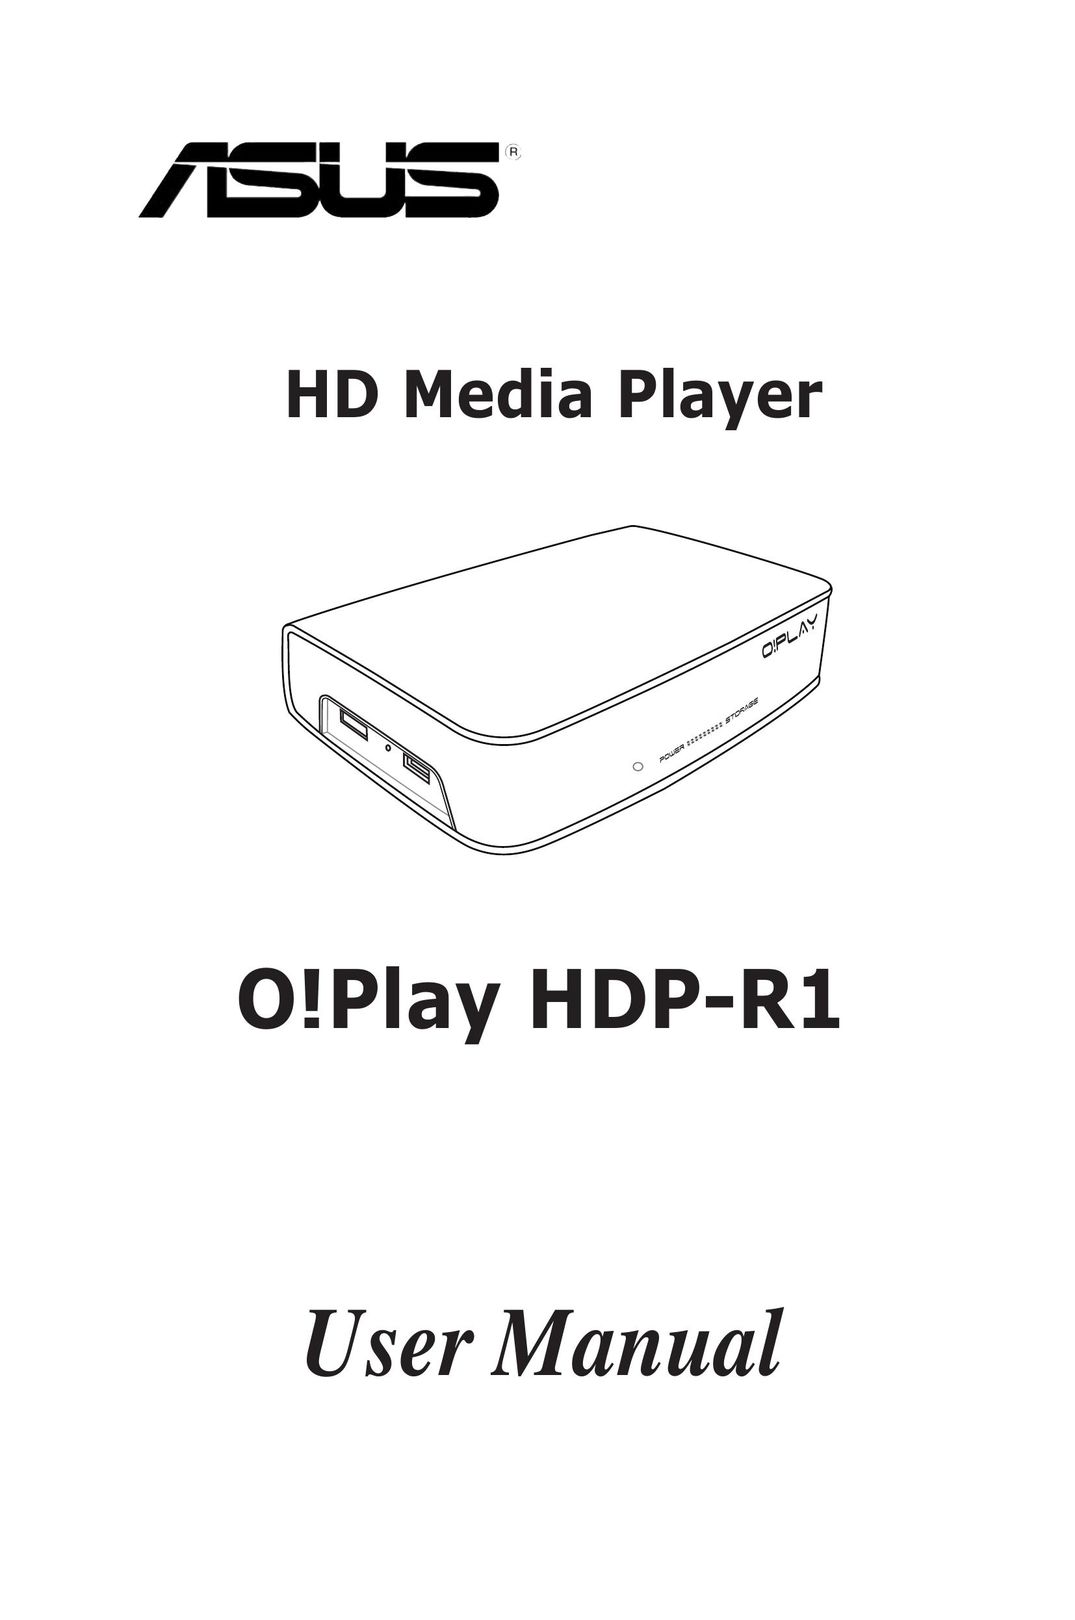 Asus HDP-R1 Portable Multimedia Player User Manual